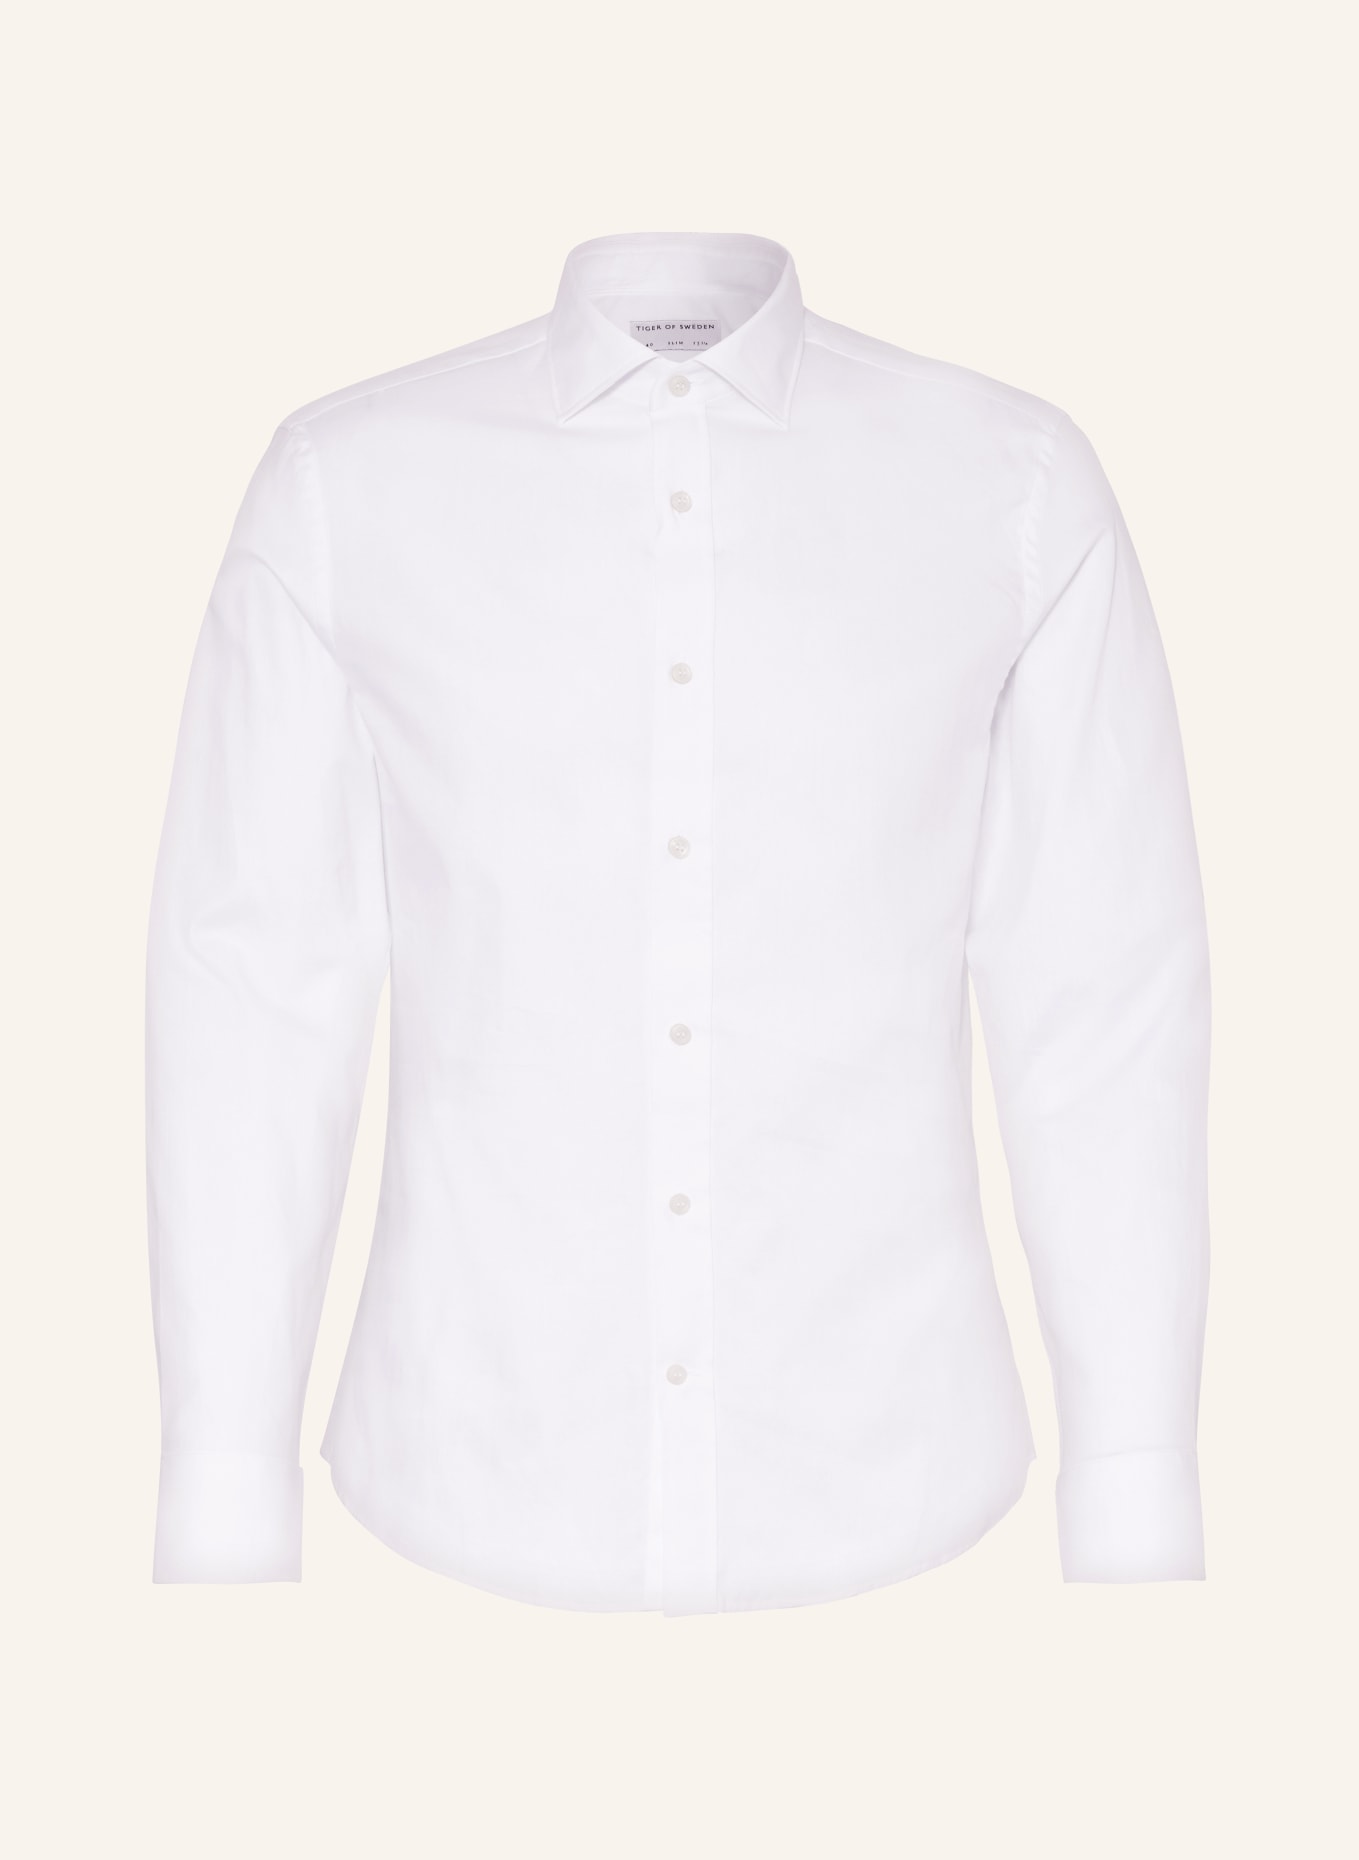 TIGER OF SWEDEN Shirt ADLEY slim fit, Color: WHITE (Image 1)